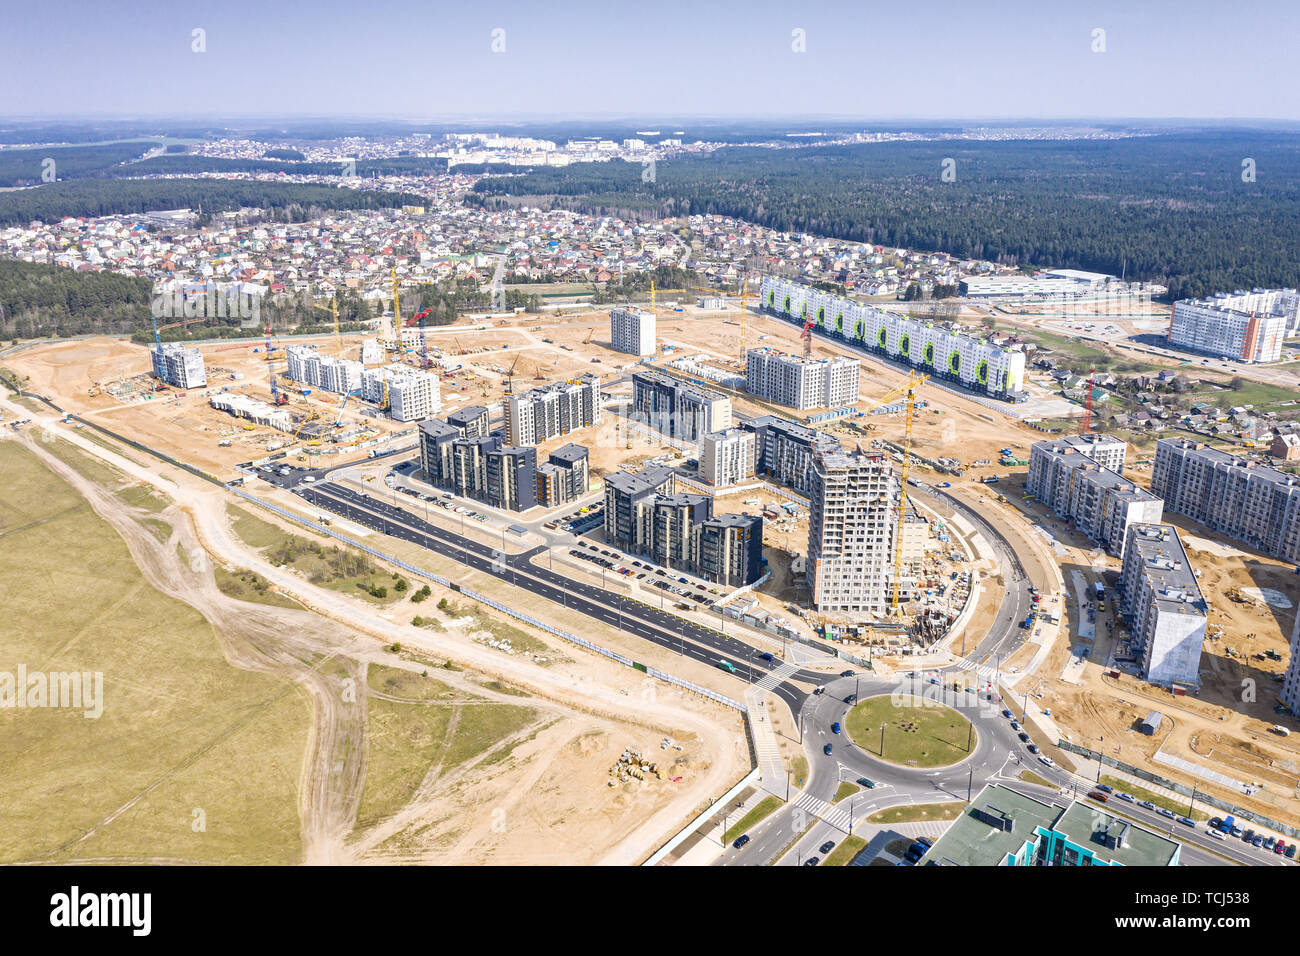 Vista panoramica della città sito in costruzione. sviluppo della nuova area residenziale. costruzione civile. Foto Stock